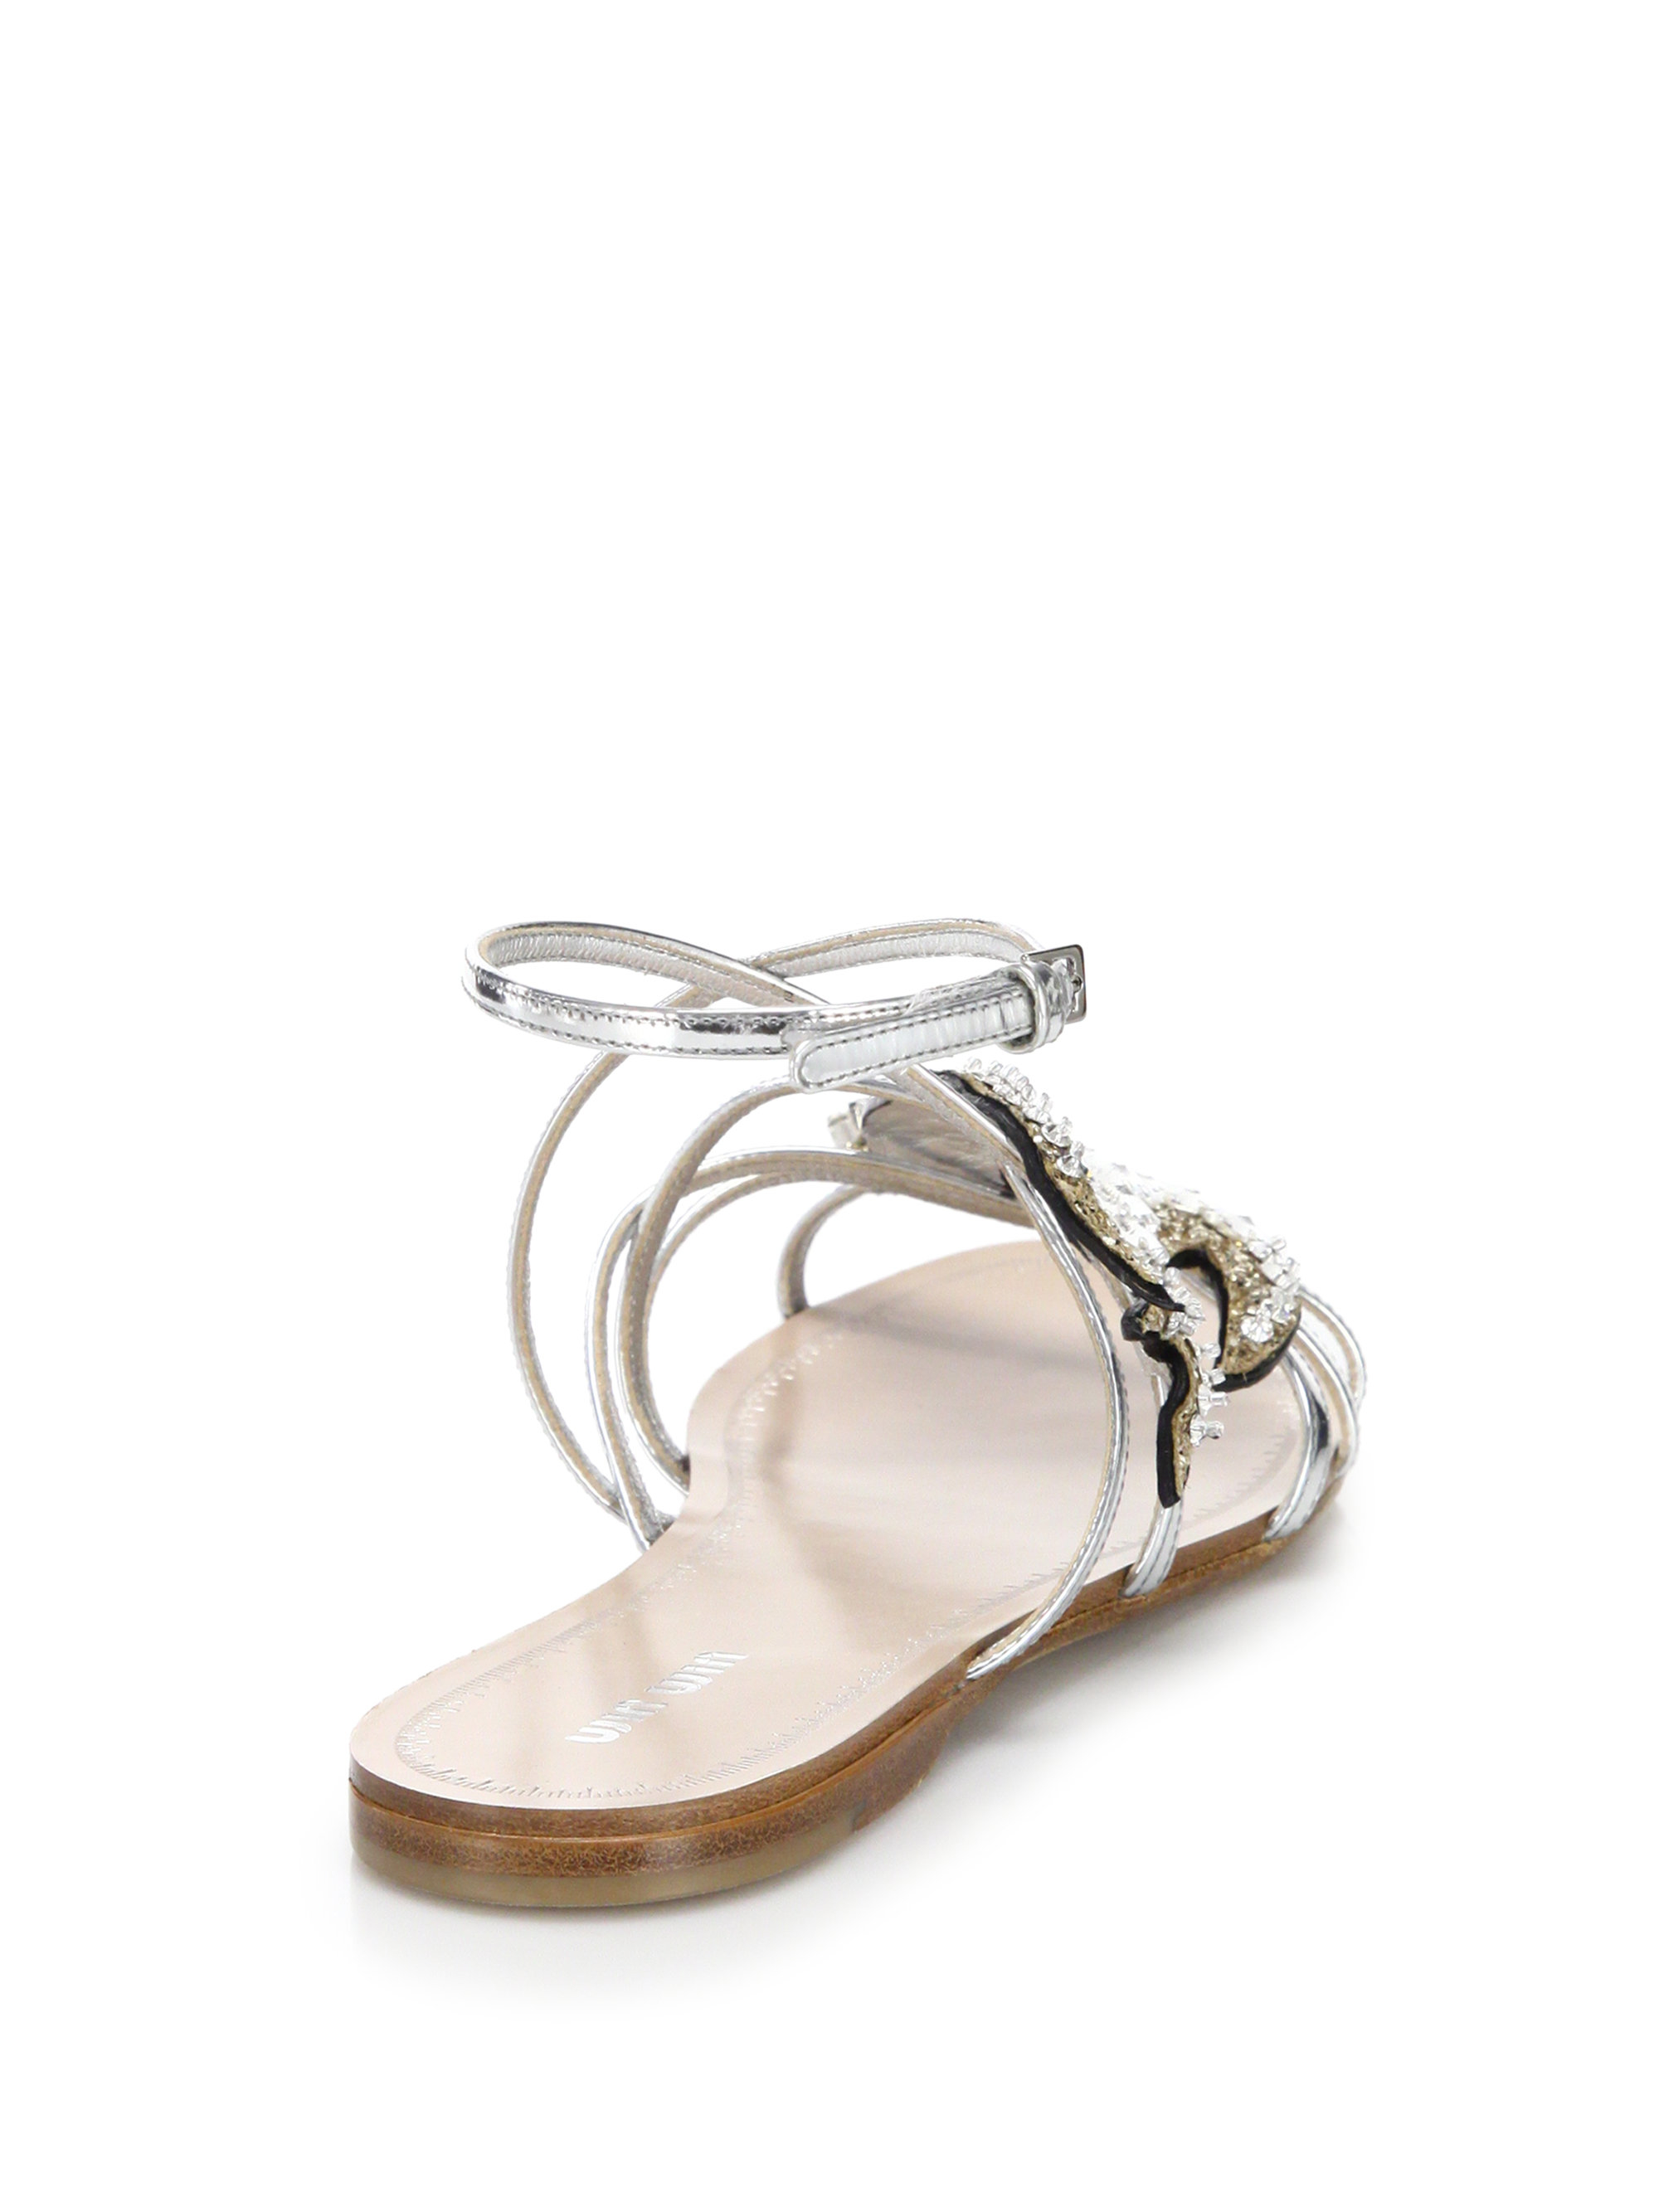 Miu miu Swallows Crystal Flat Sandals in Metallic | Lyst